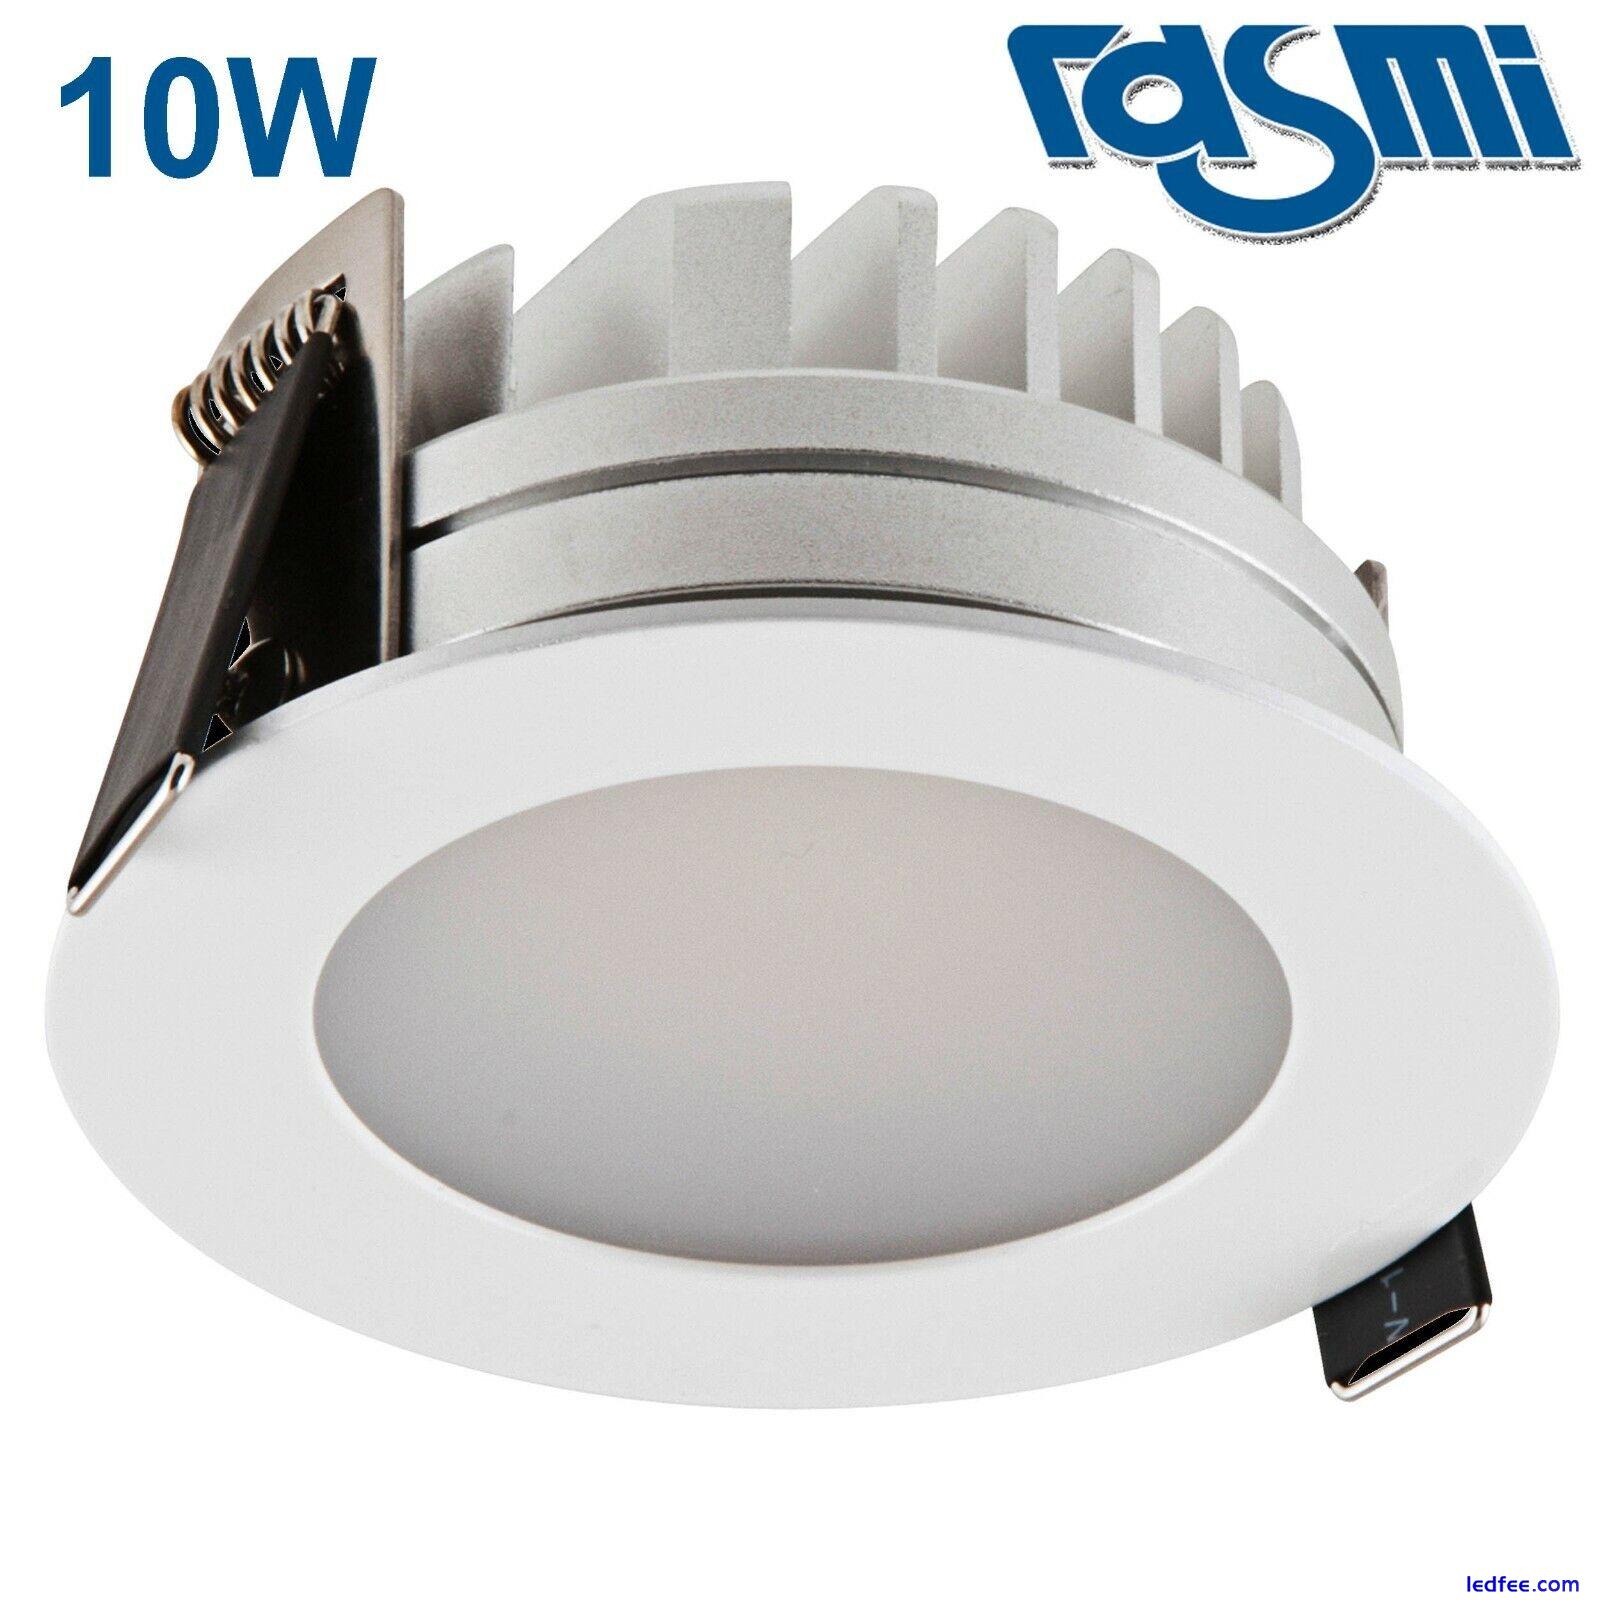  Modern 10w,15w, 20w, 30w LED Round White Ceiling Downlight / Spotlights IP54 2 